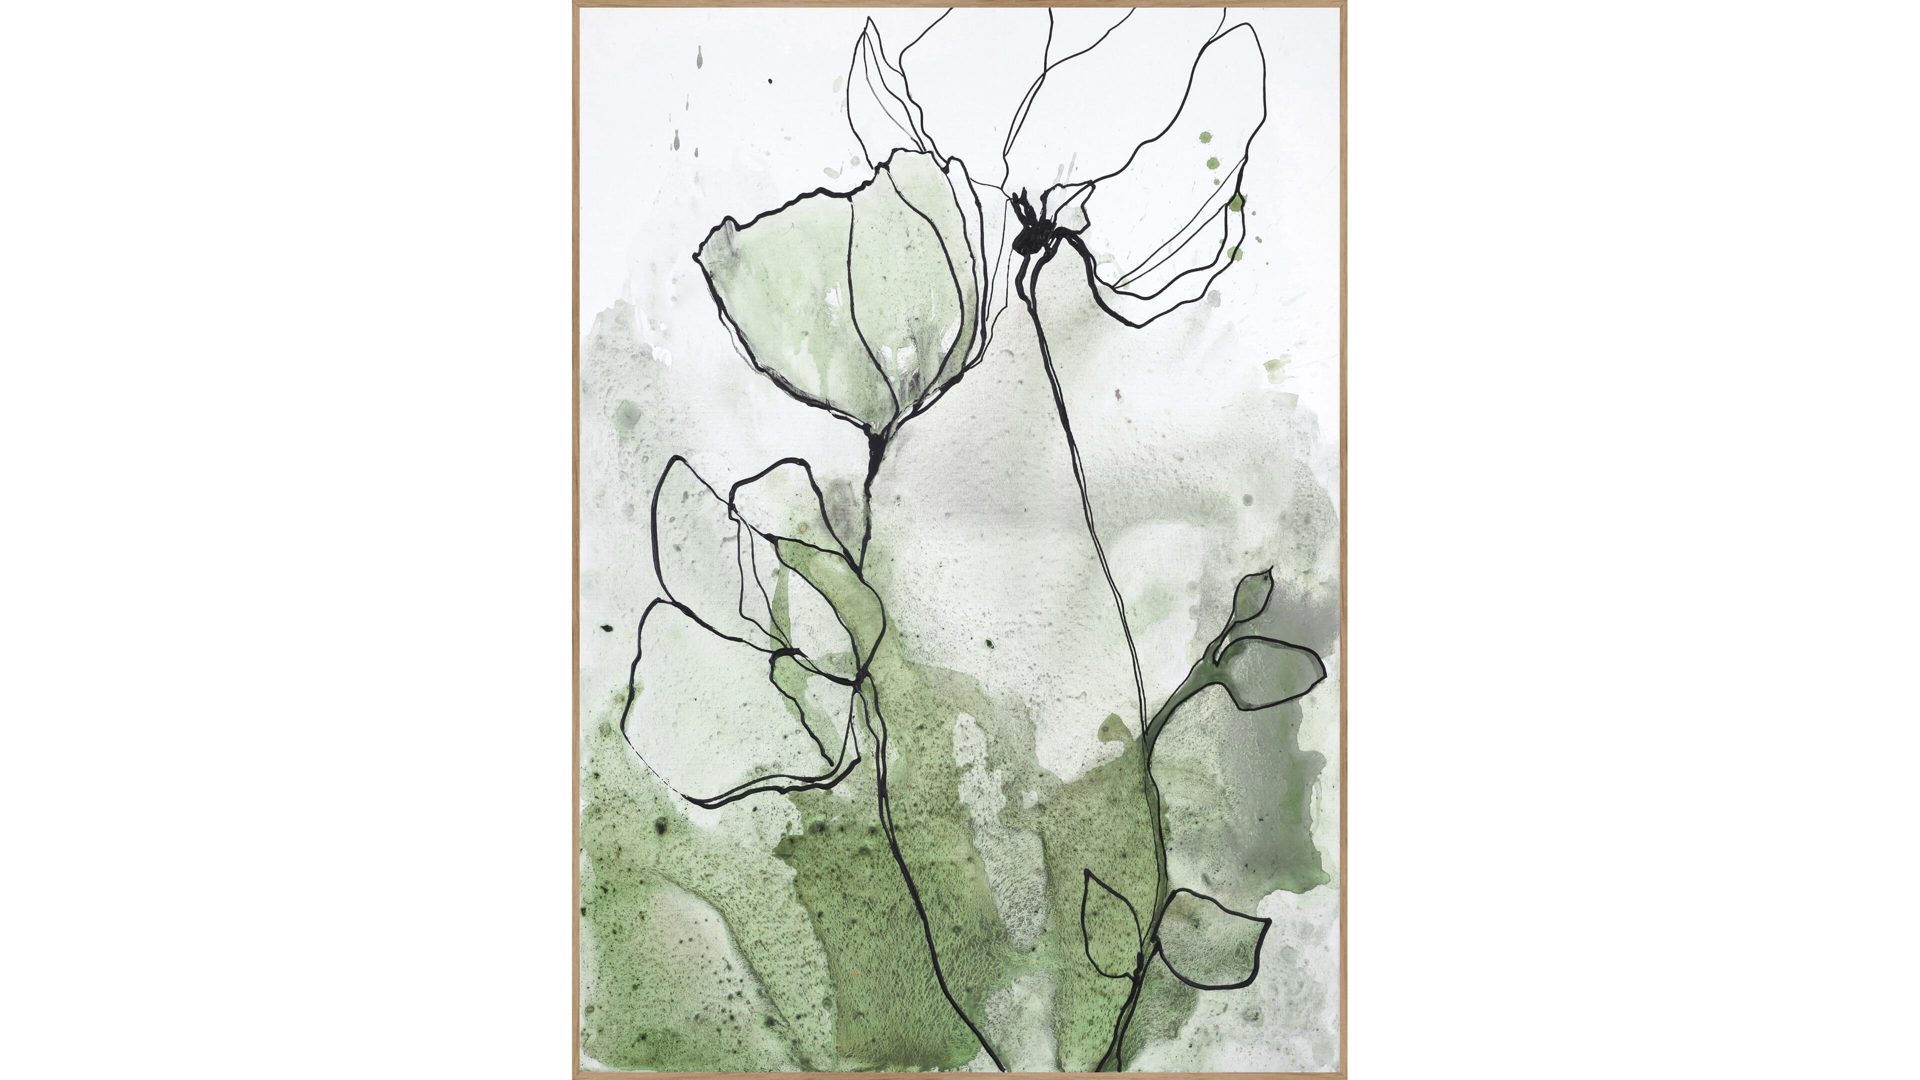 Kunstdruck Malerifabrikken aus Karton / Papier / Pappe in Grün Posterboard Flowerline 2 mit Rahmen Motiv Flowerline 2 & Eichenholzrahmen – ca. 50 x 70 cm